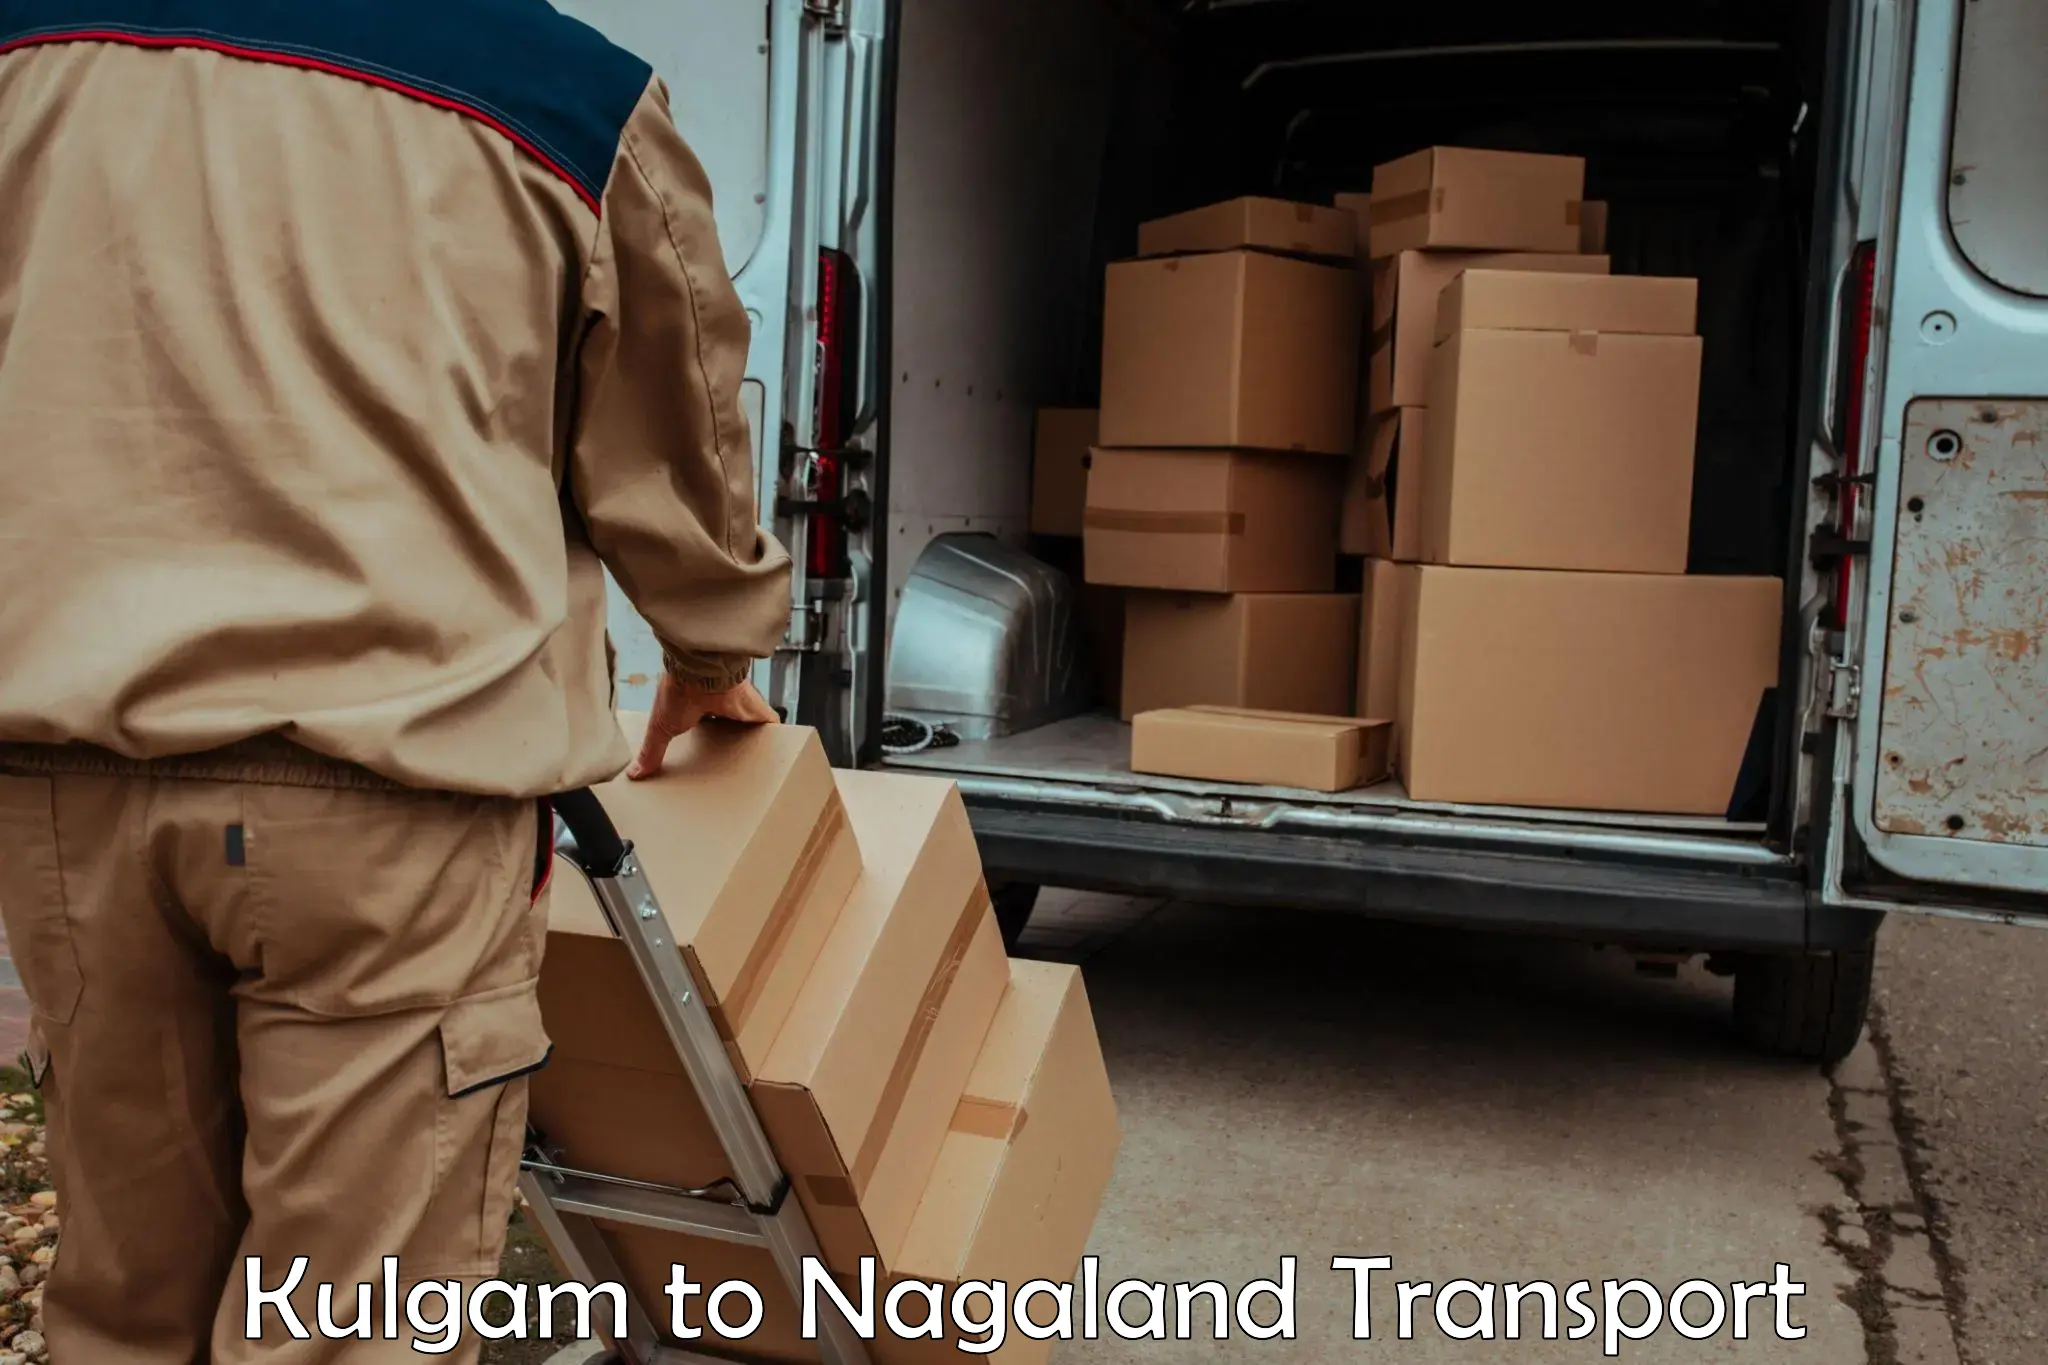 Land transport services Kulgam to Nagaland